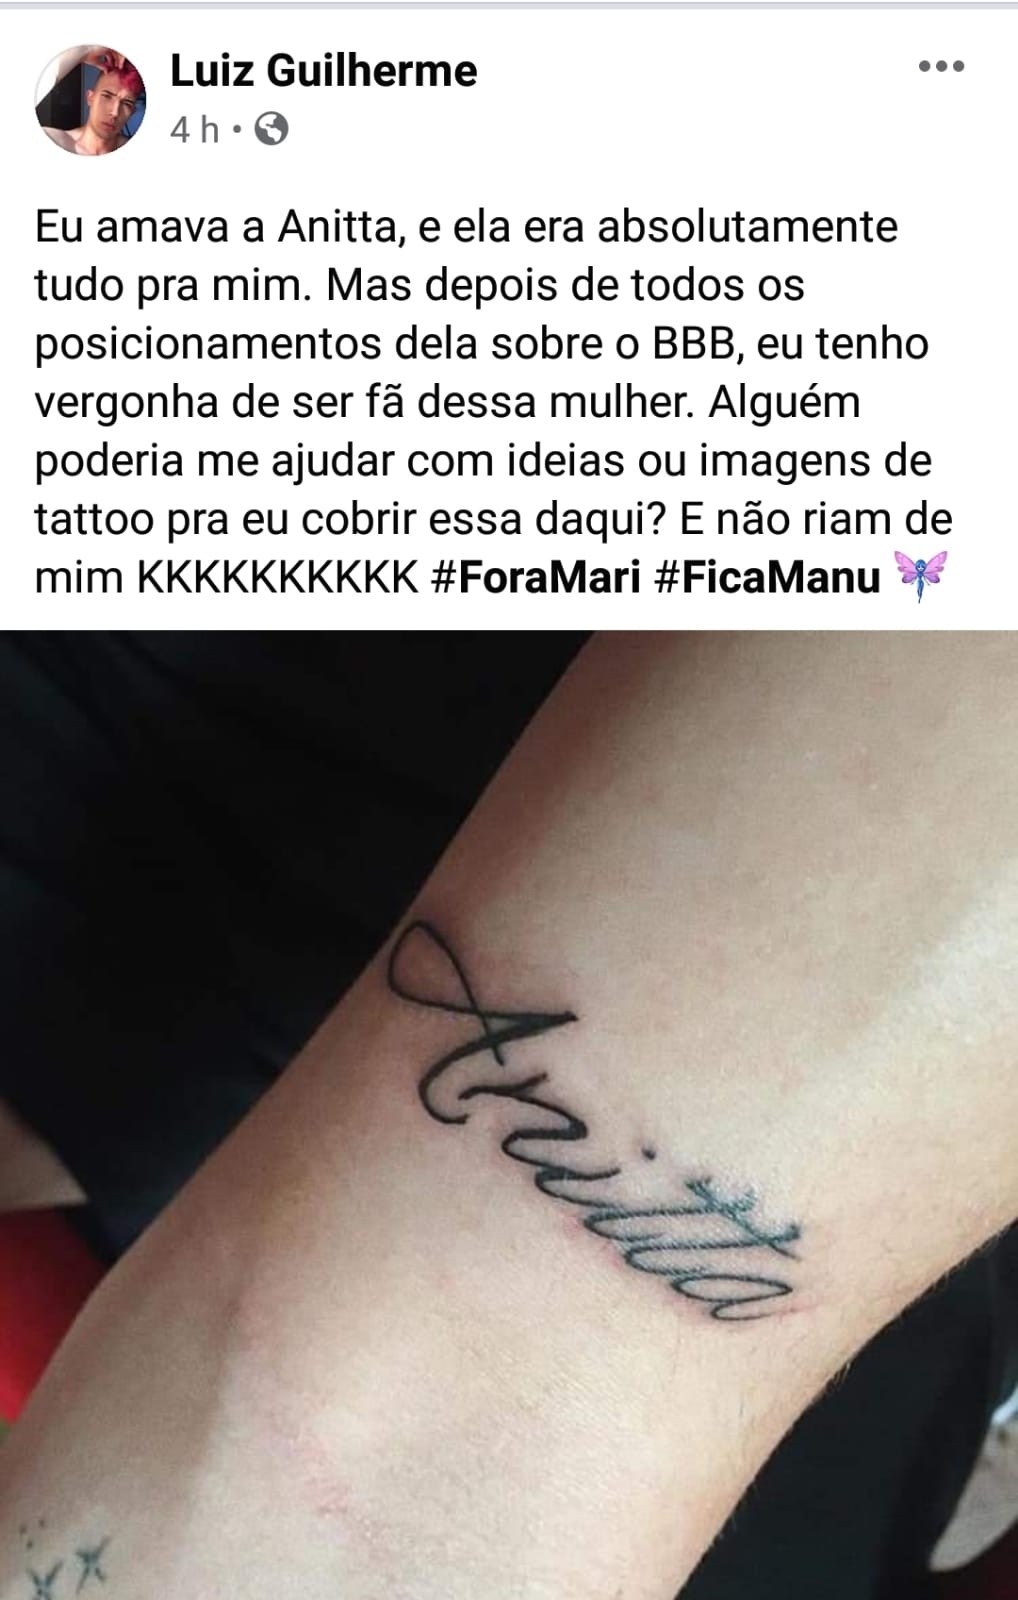 Fã pede ajuda para apagar tatuagem com o nome da cantora (Foto: Reprodução / Instagram)